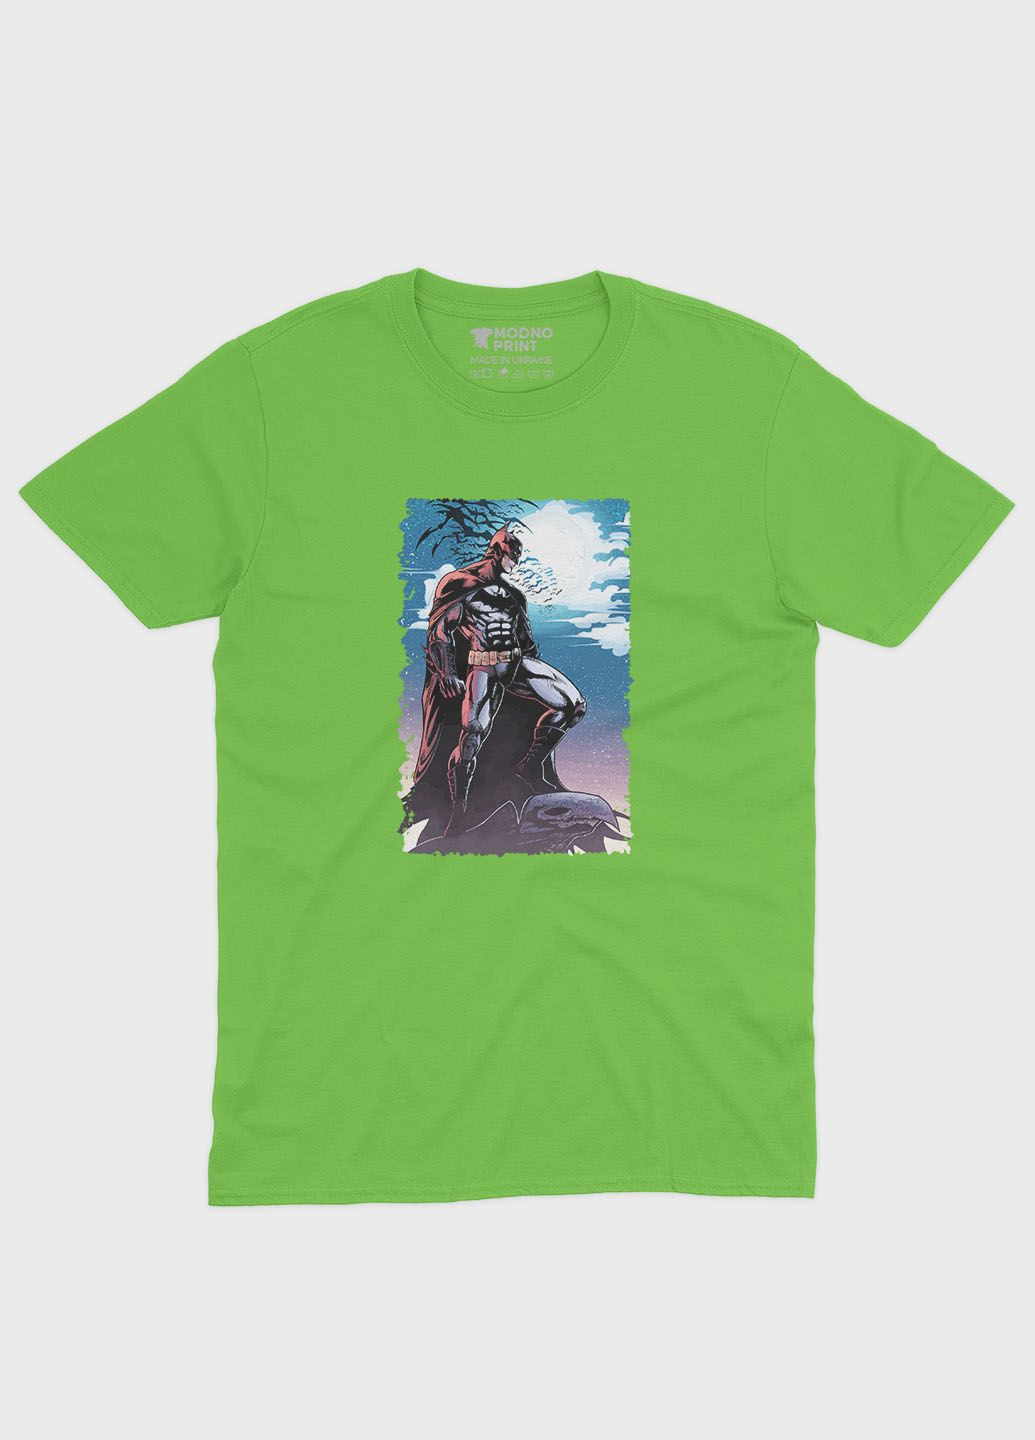 Салатовая демисезонная футболка для девочки с принтом супергероя - бэтмен (ts001-1-kiw-006-003-002-g) Modno